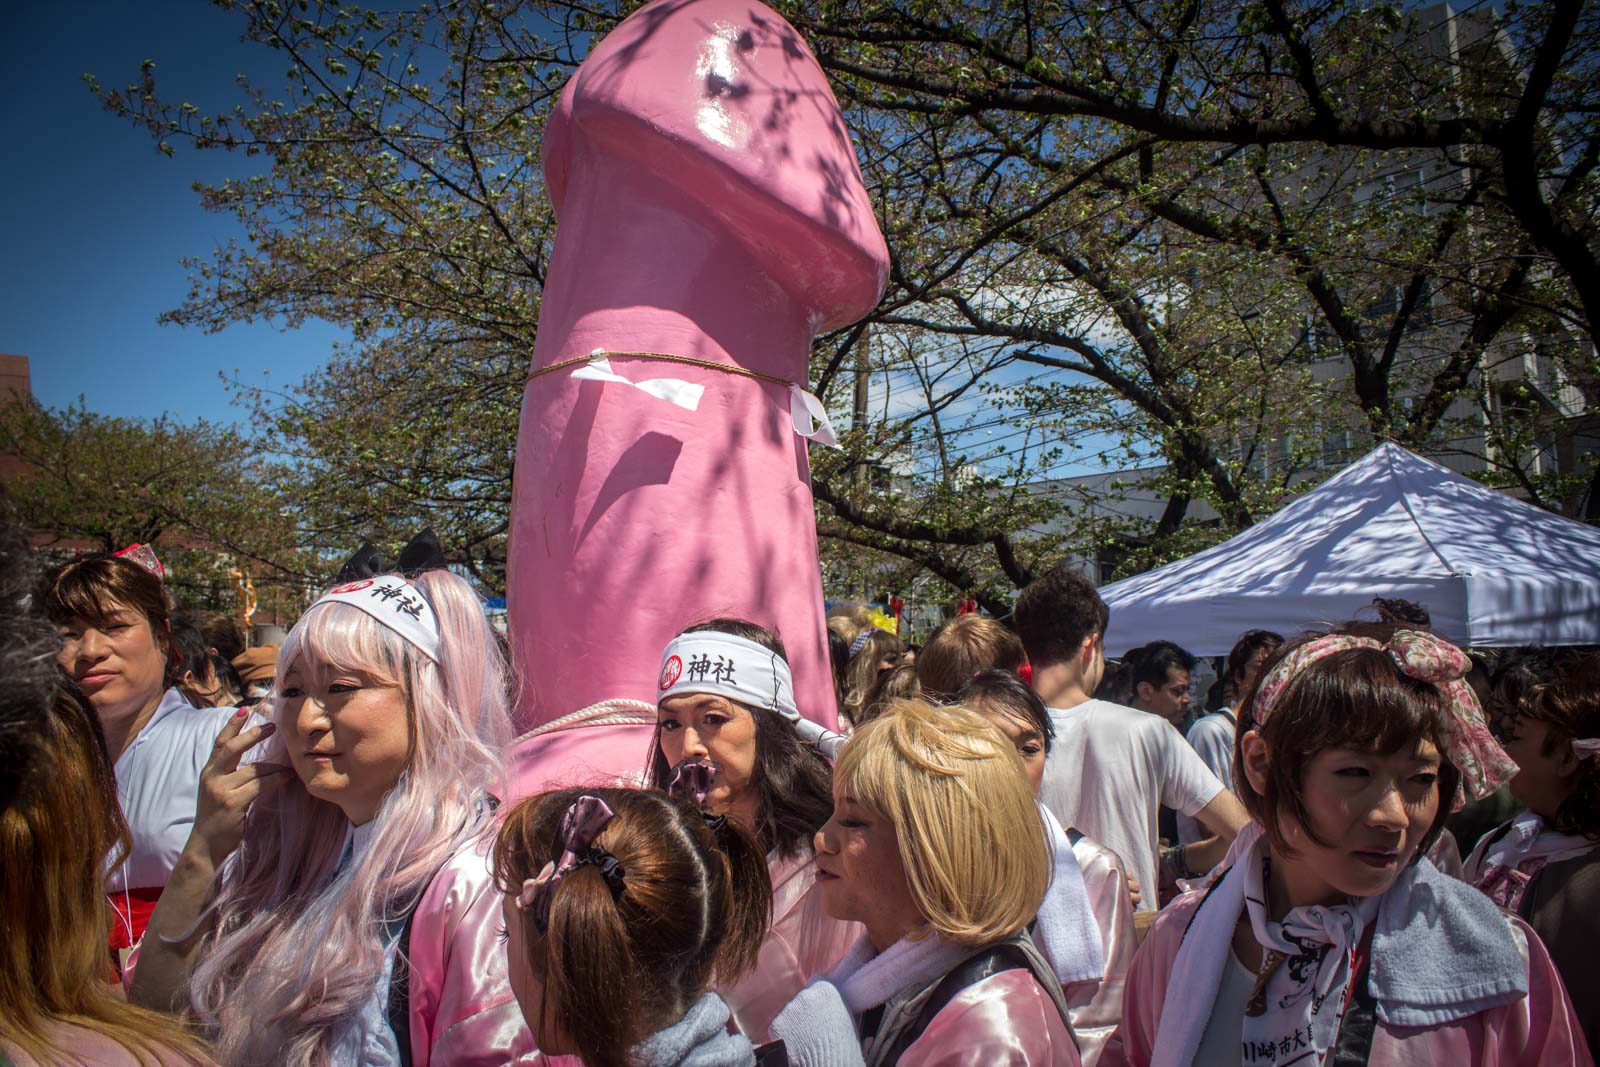 1600px x 1067px - Japanese Penis Festival in Kawasaki: Kanamara Matsuri, Japan